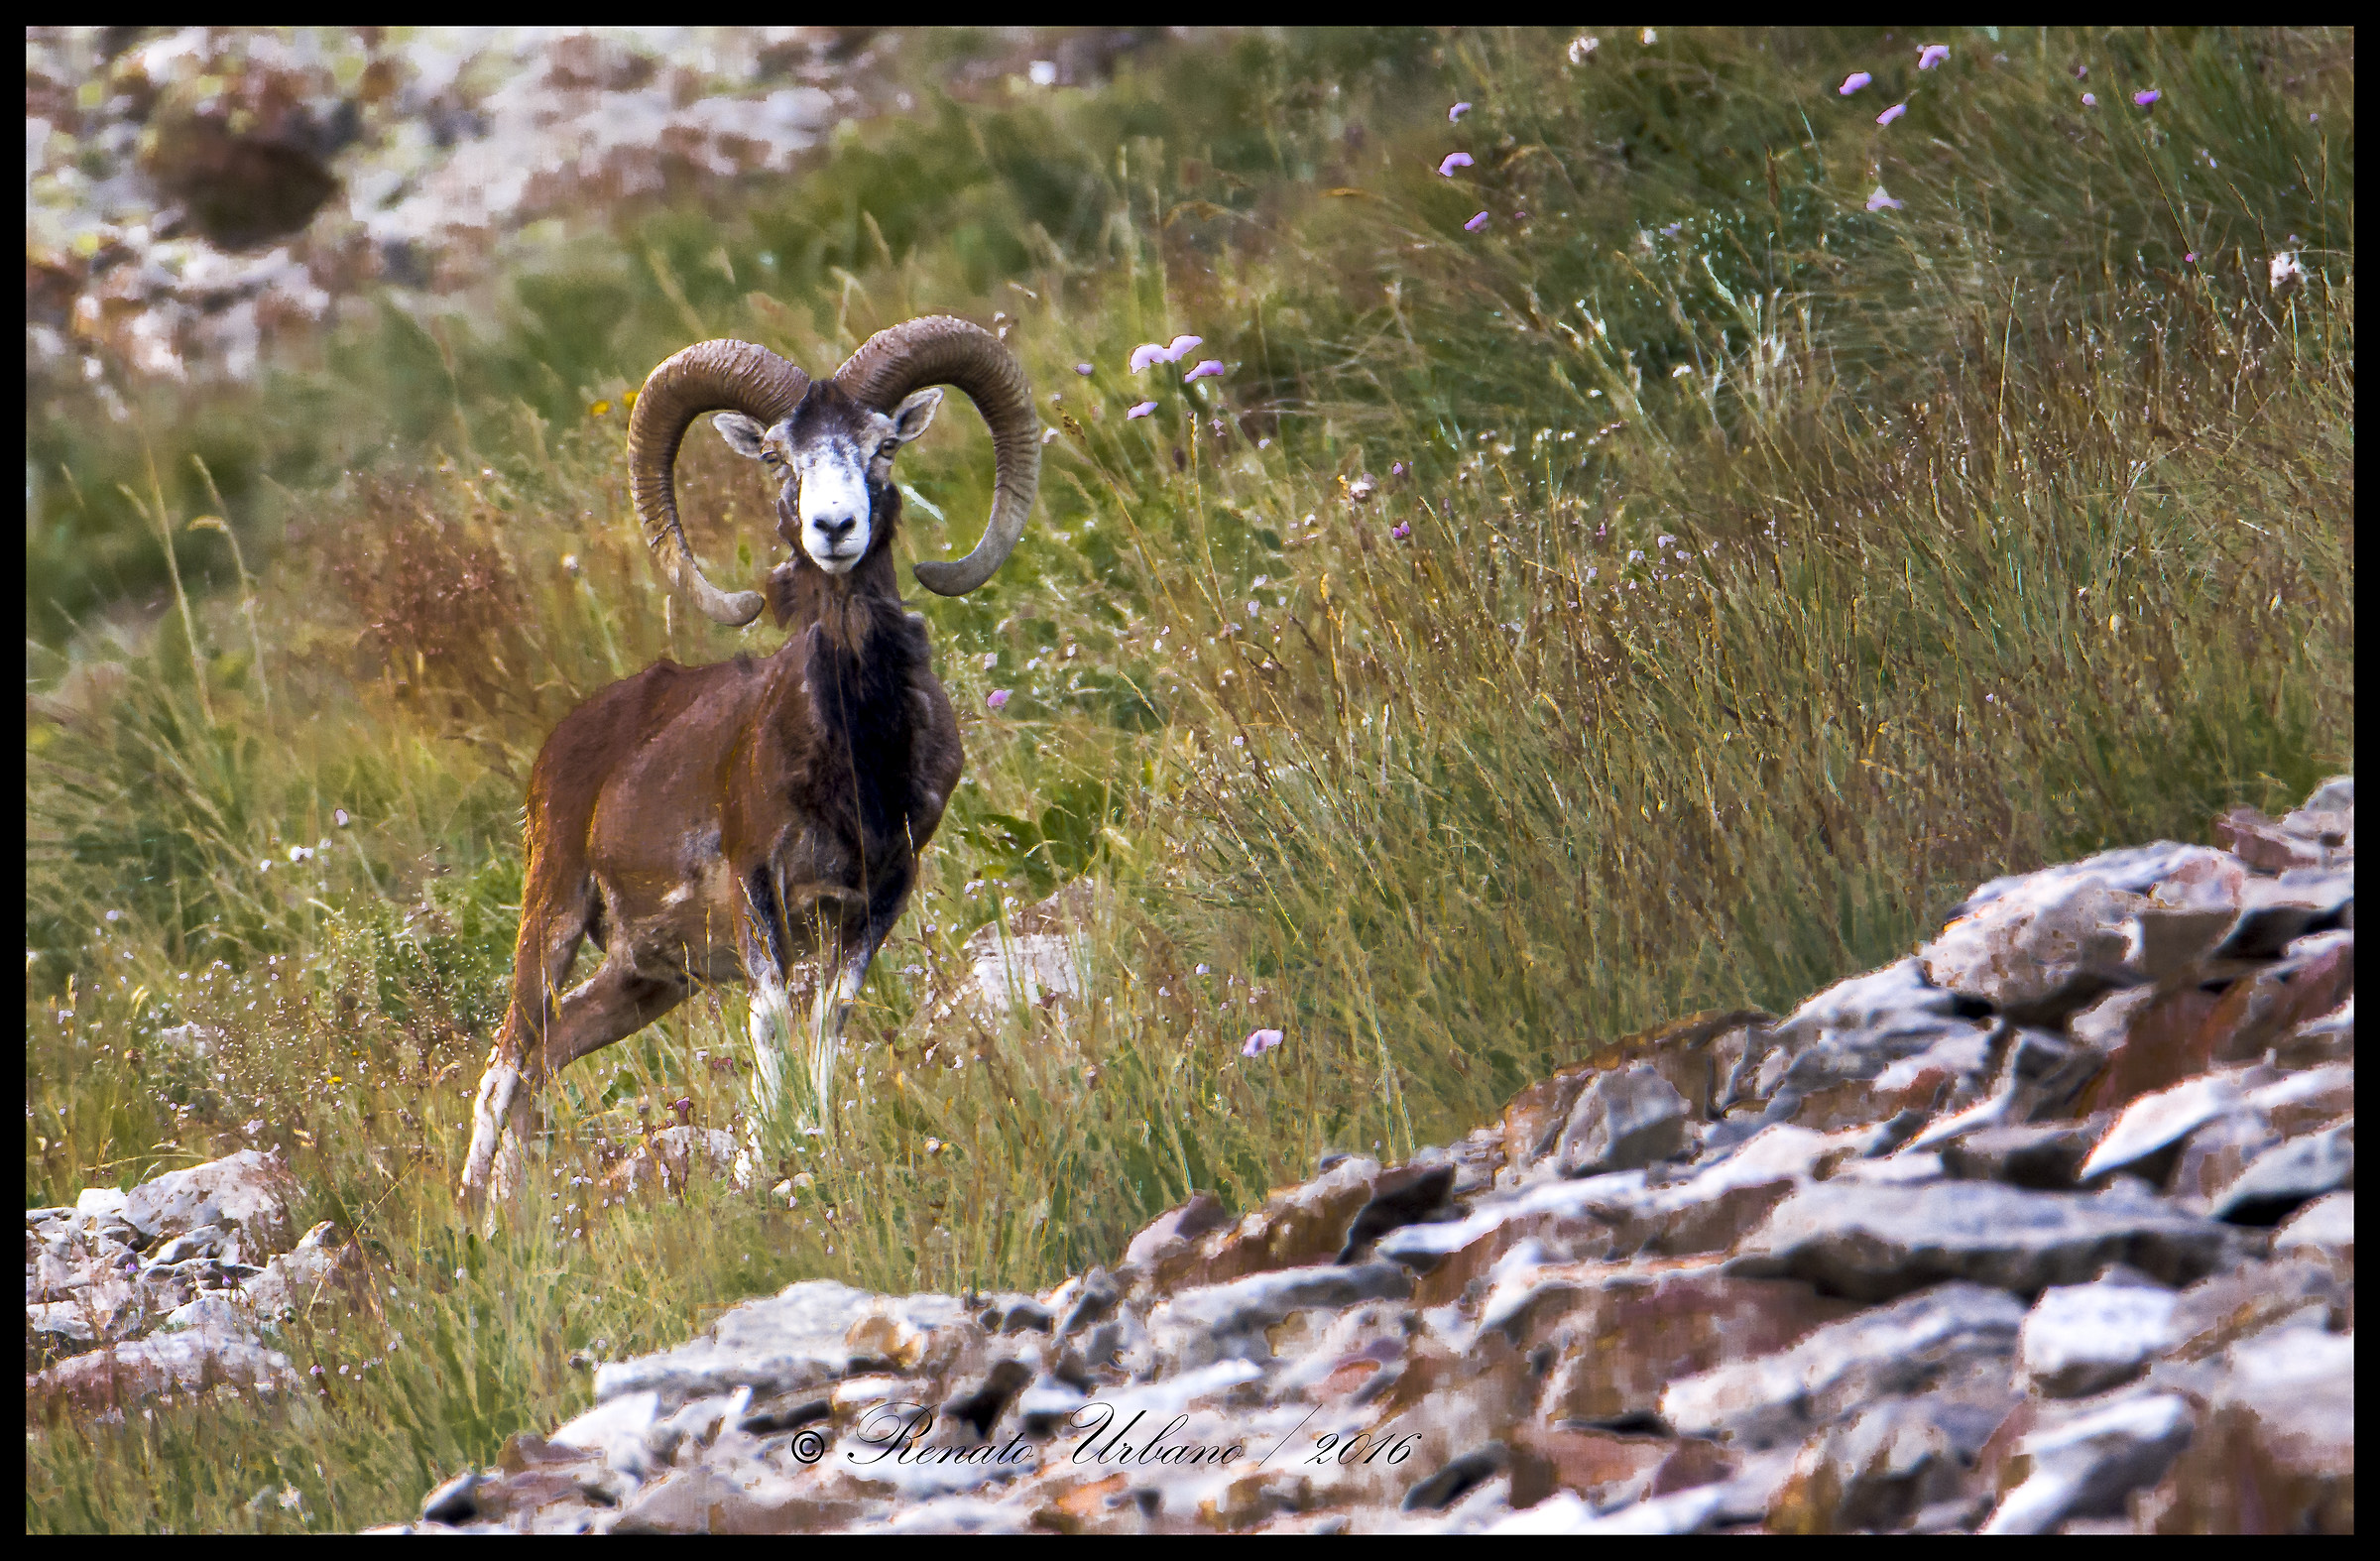 curious mouflon...